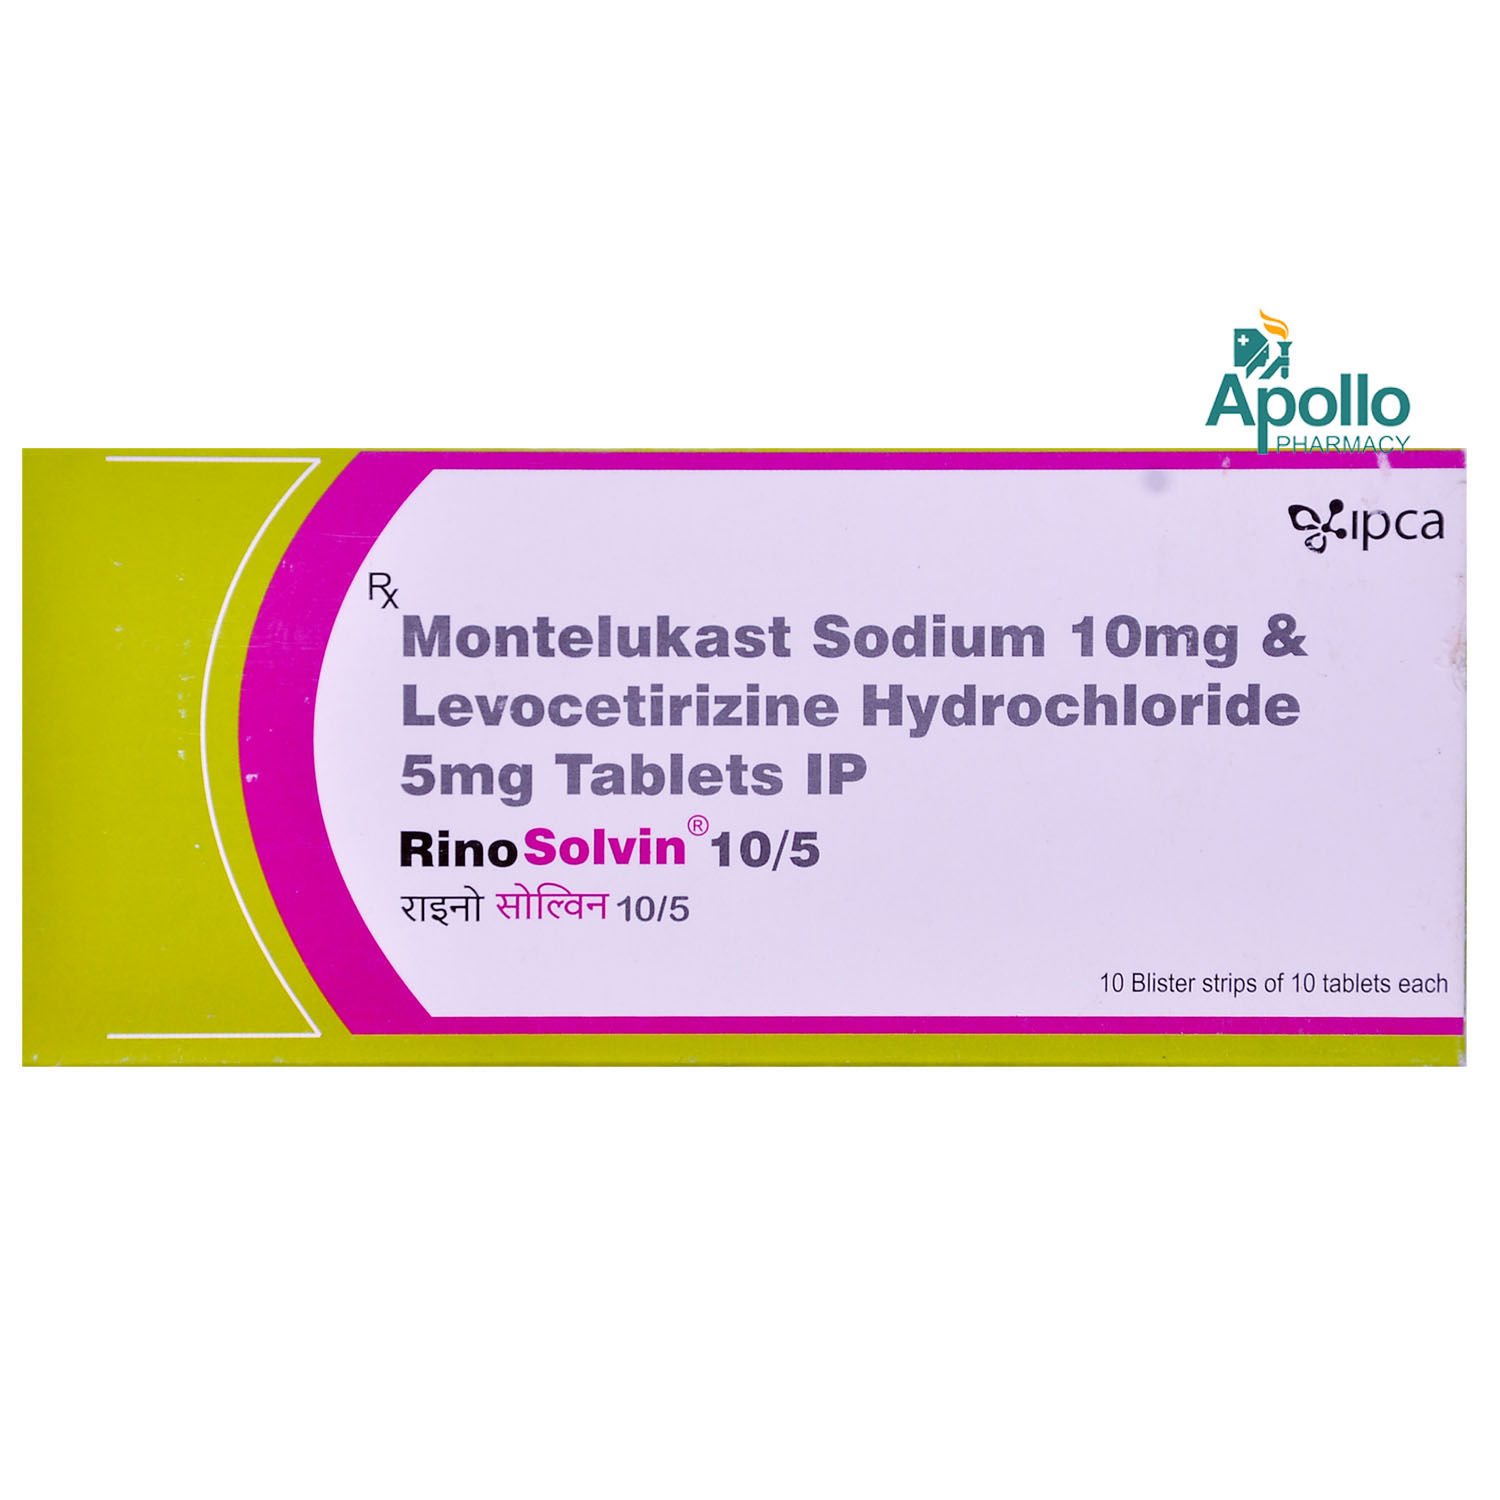 Rinosolvin 10/5 mg Tablet 10's, Pack of 10 TABLETS